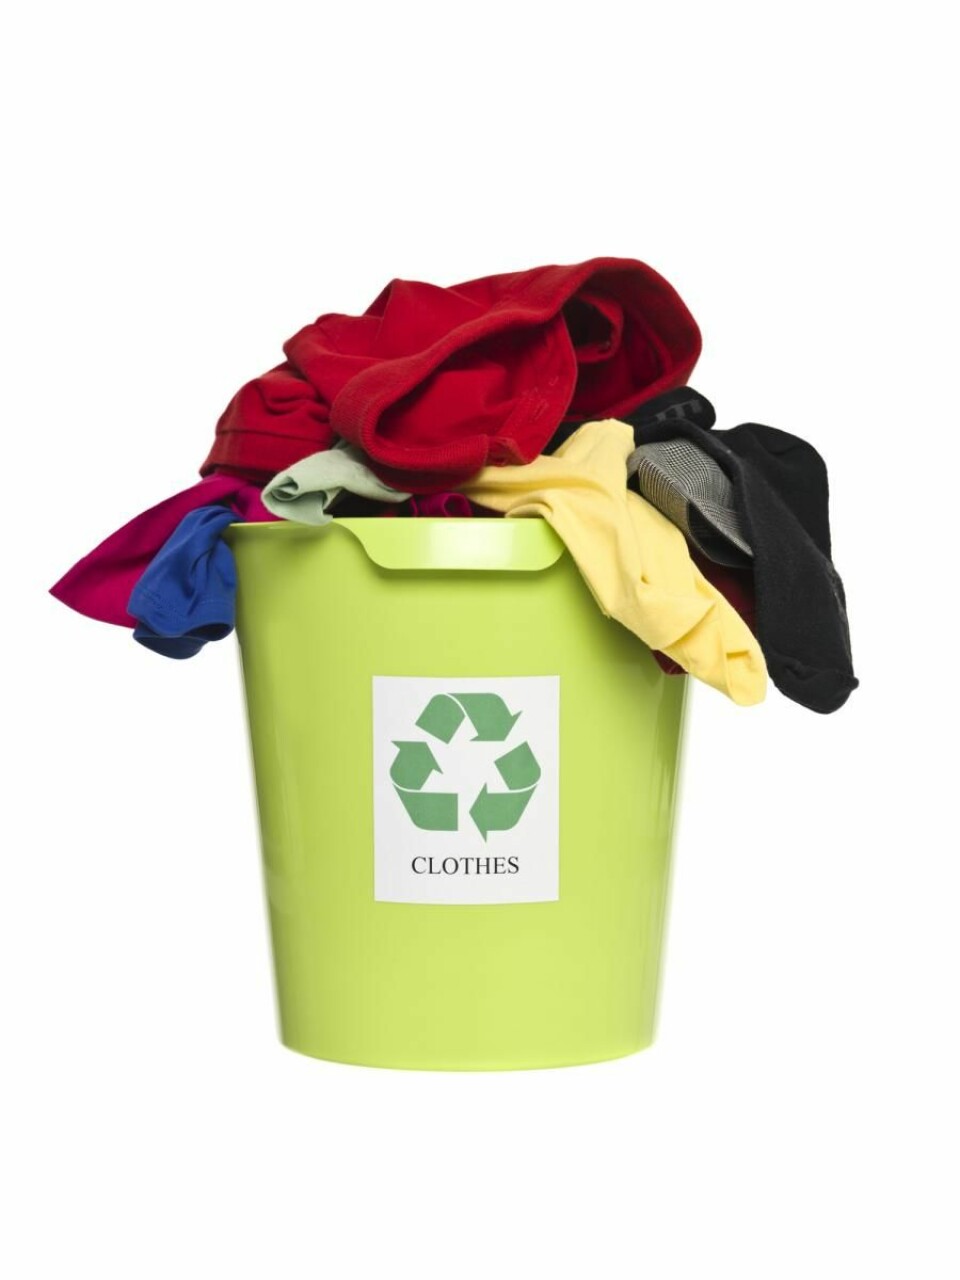 Mange problemer med resirkulering av klær. Illfoto: Yay Images